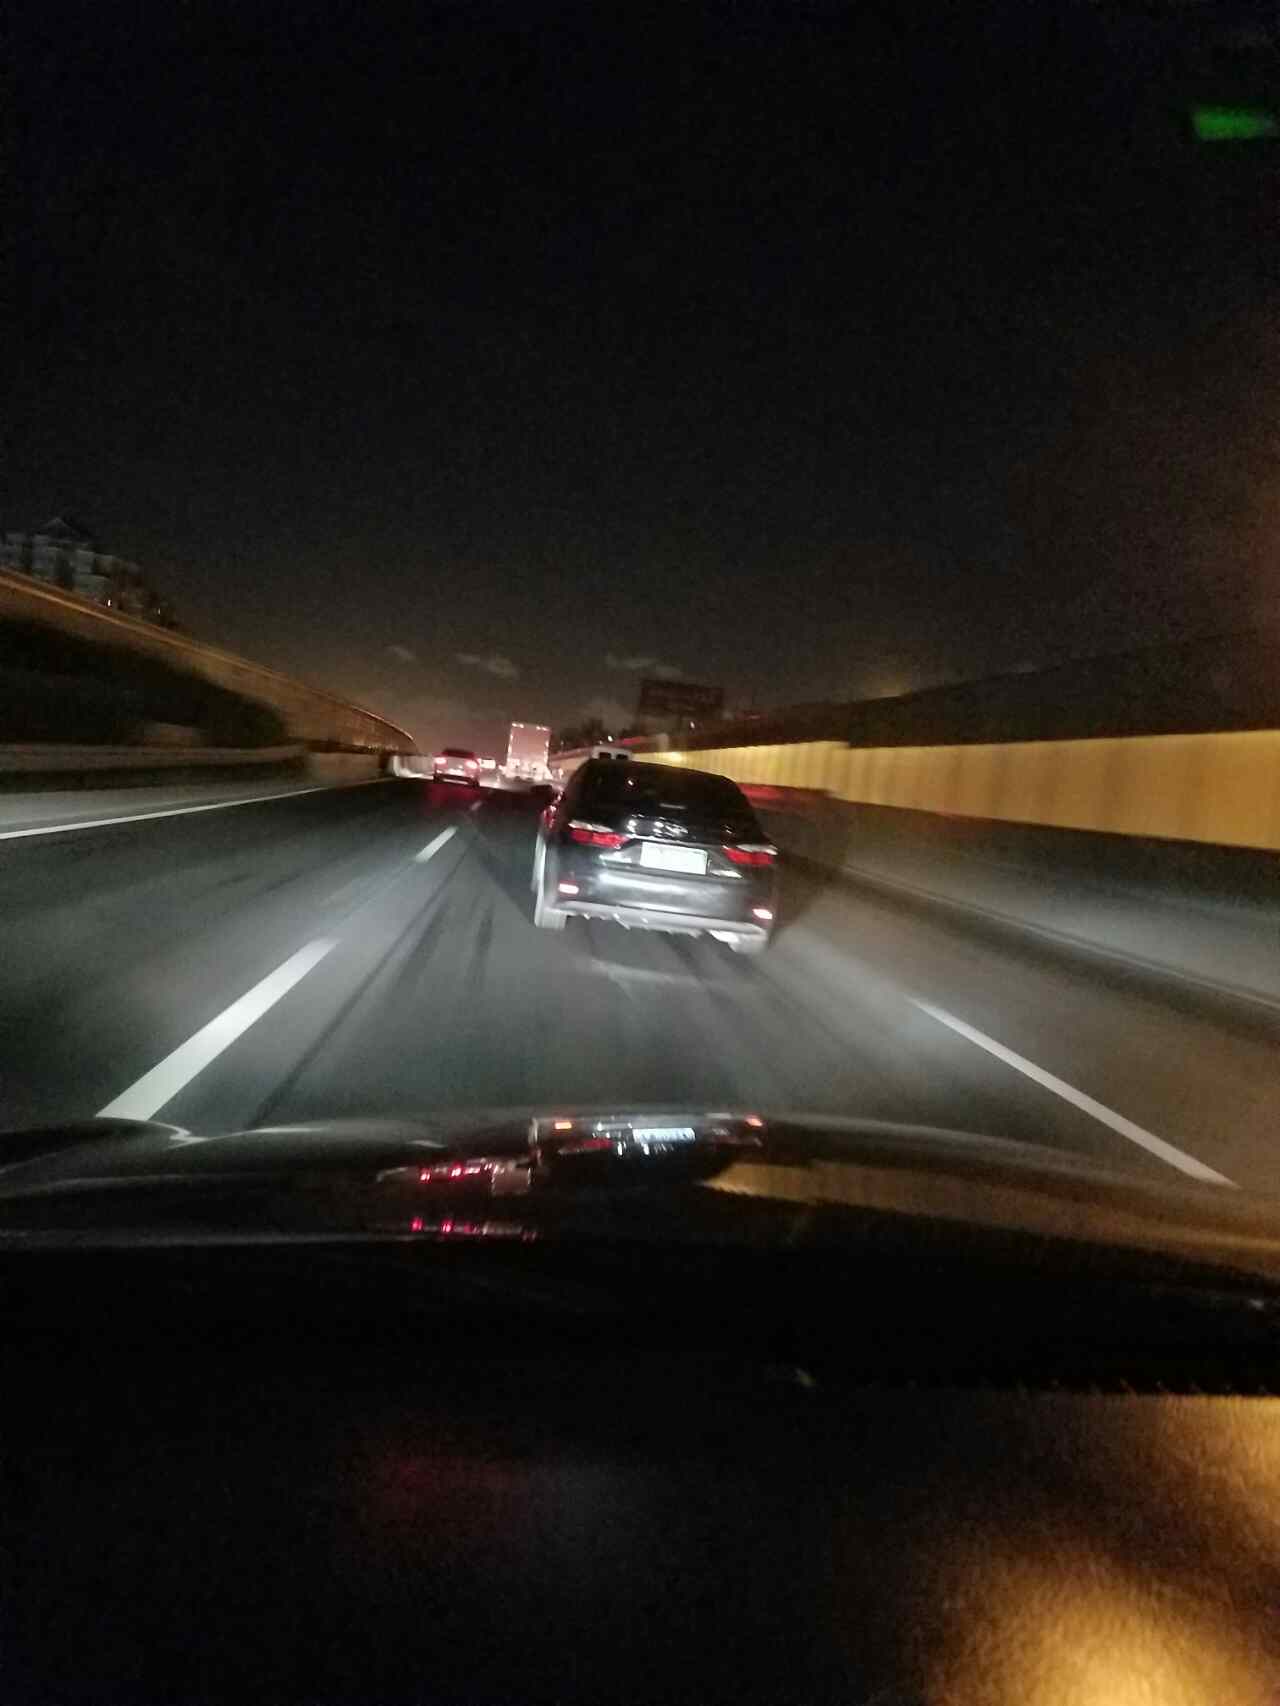 晚上高速公路真实照片图片